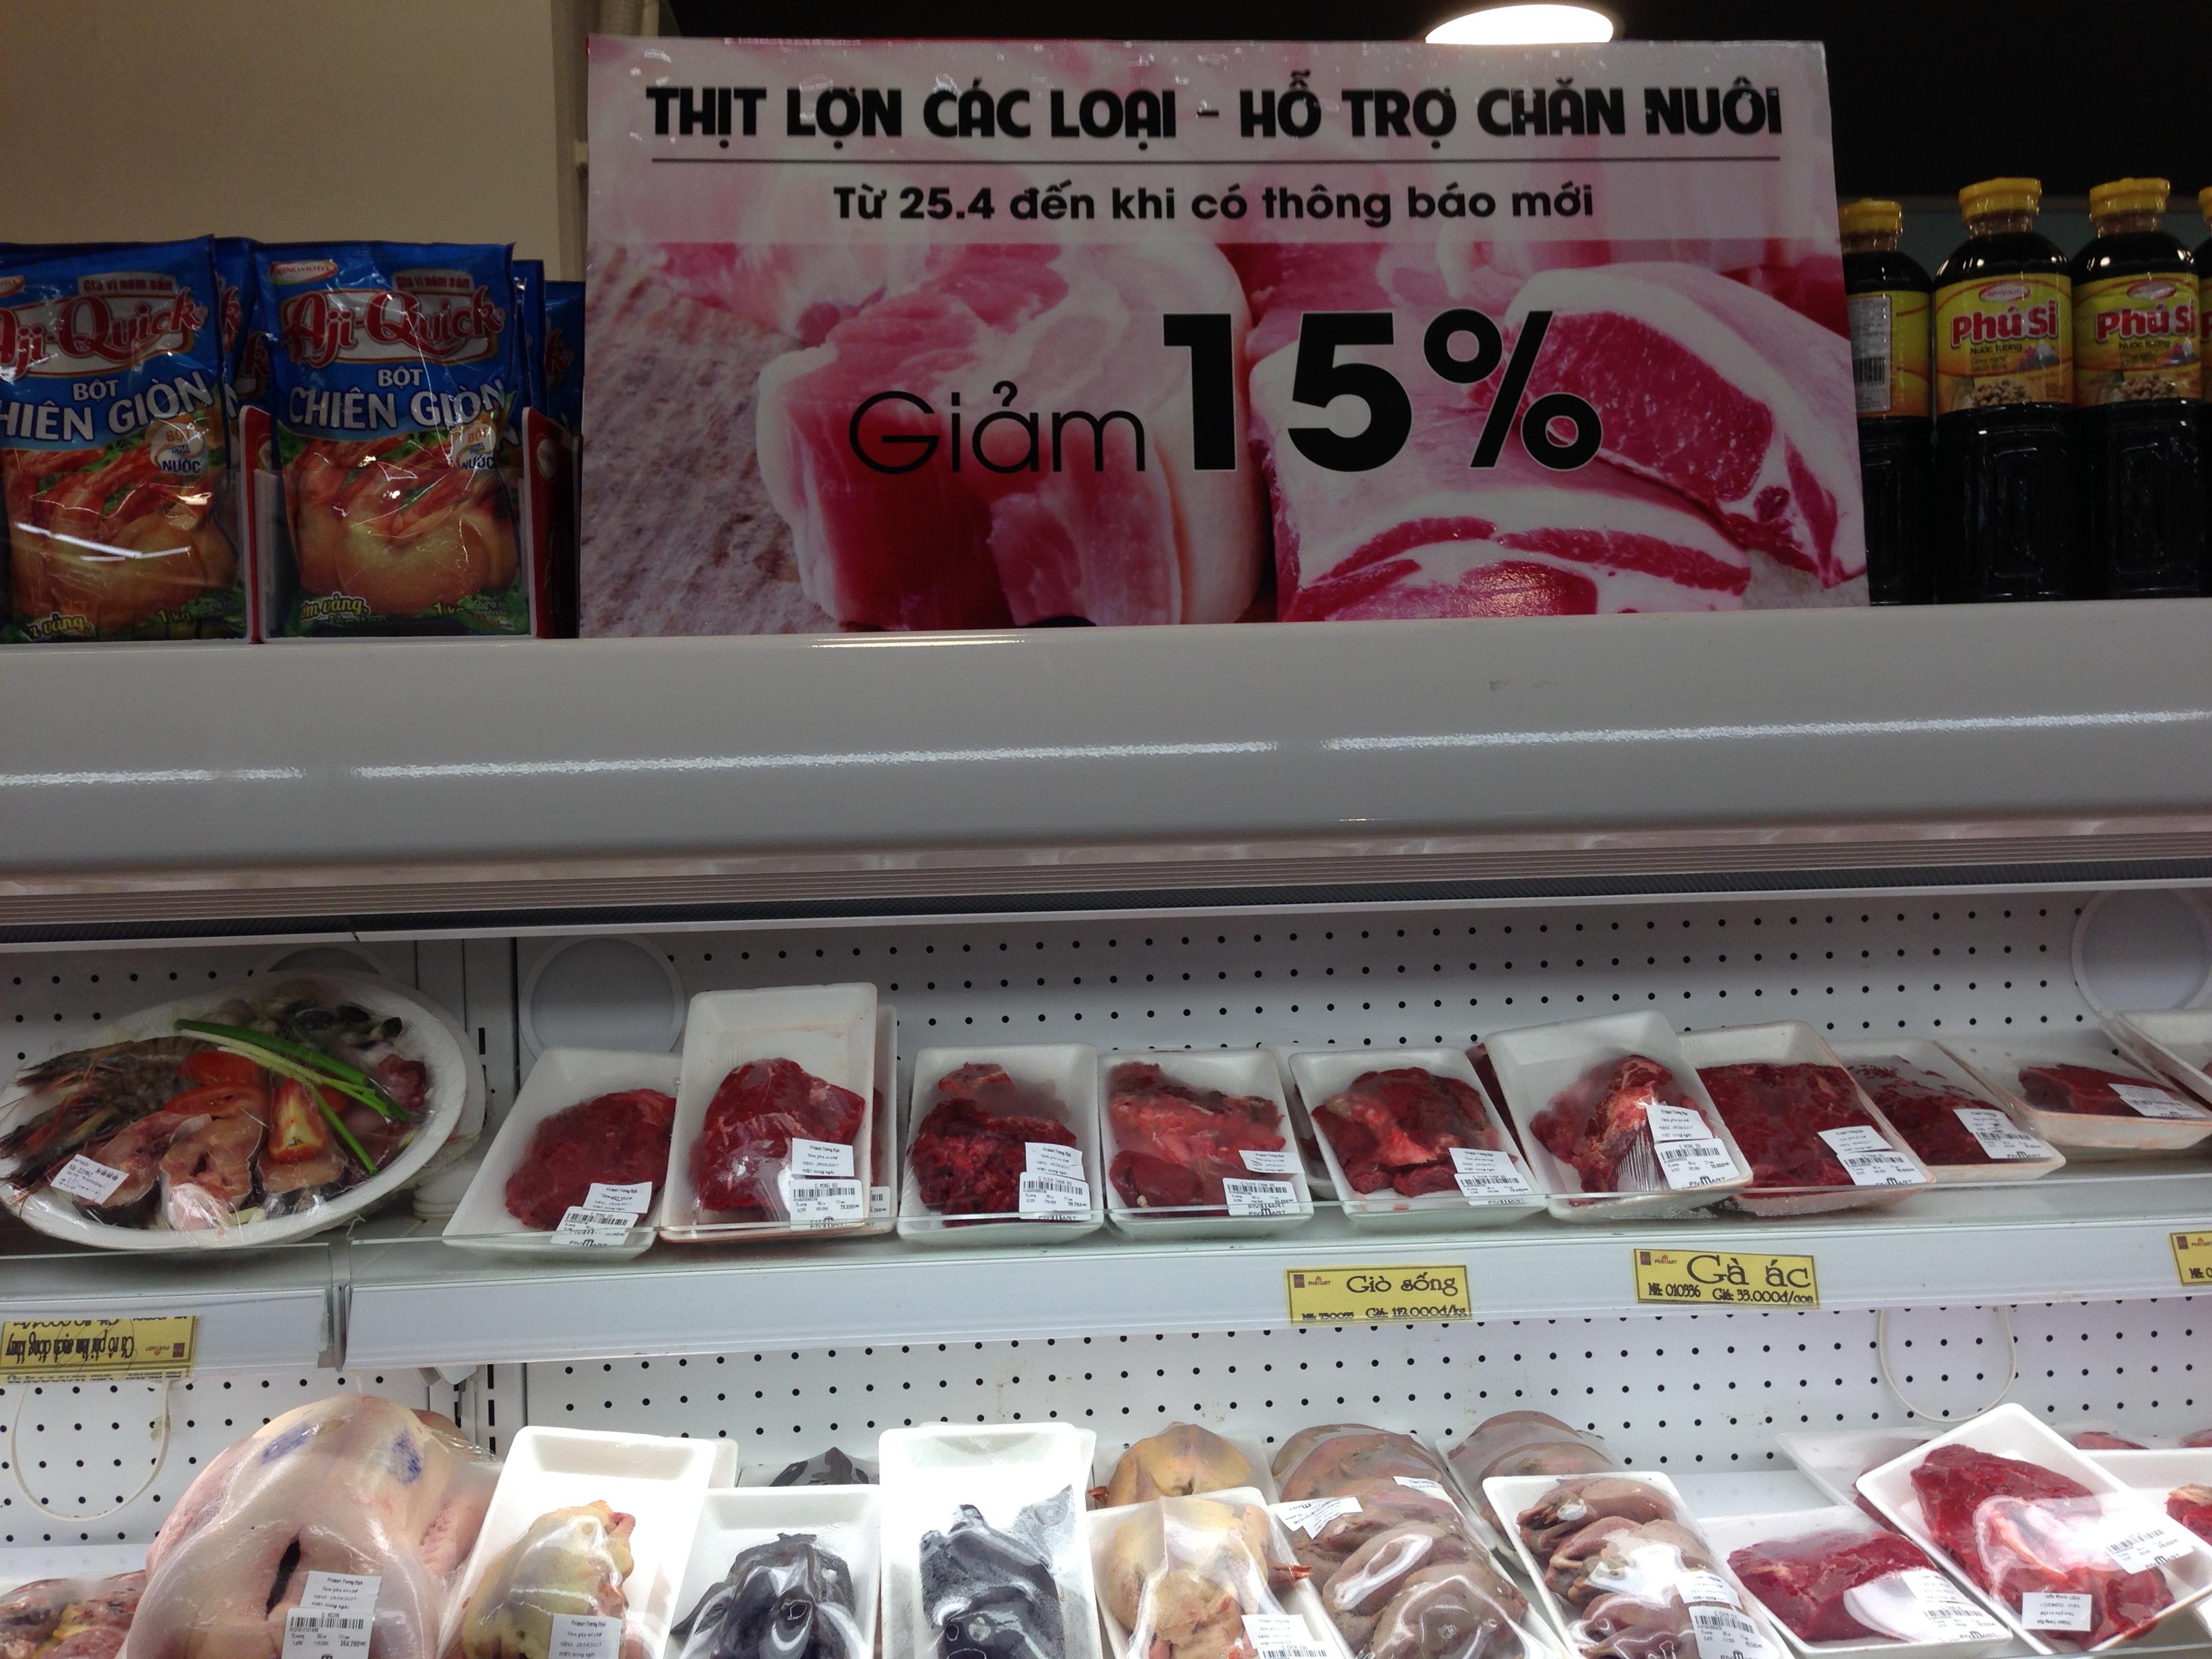 Giải cứu thịt lợn: Các siêu thị vào cuộc bằng việc giảm giá sâu